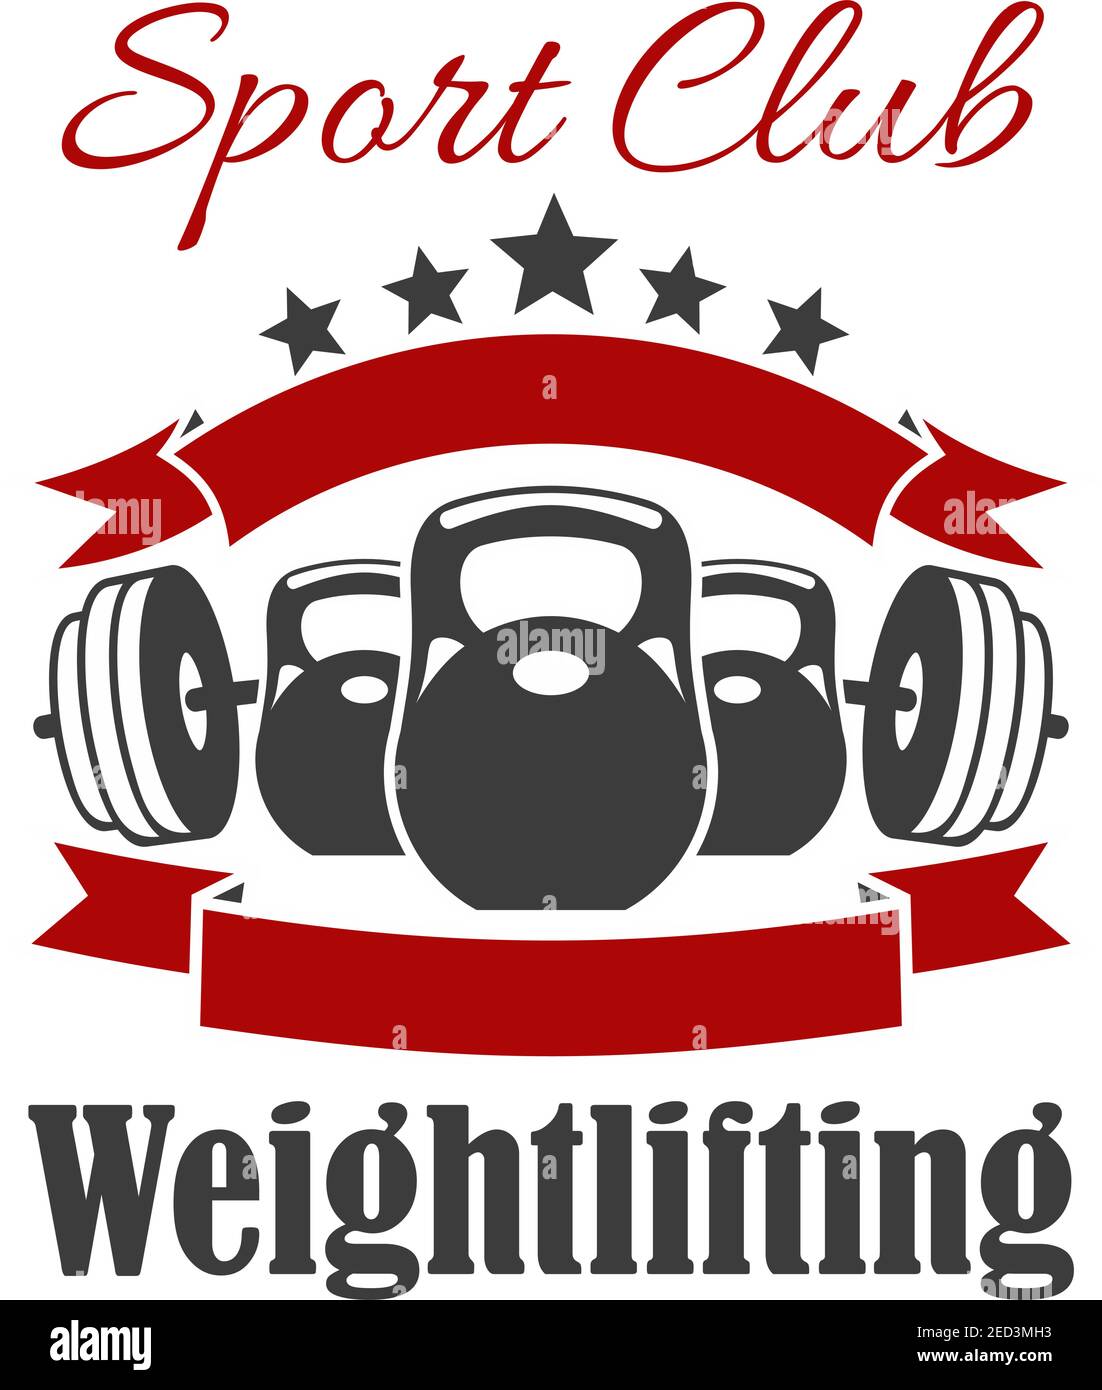 Weightlifting-Club-Schild. Vektor-Abzeichen für Gewichtheber, Fitness, Crossfit Sporthalle. Hantelhantel, Eisenhantel, Band, Stern Stock Vektor